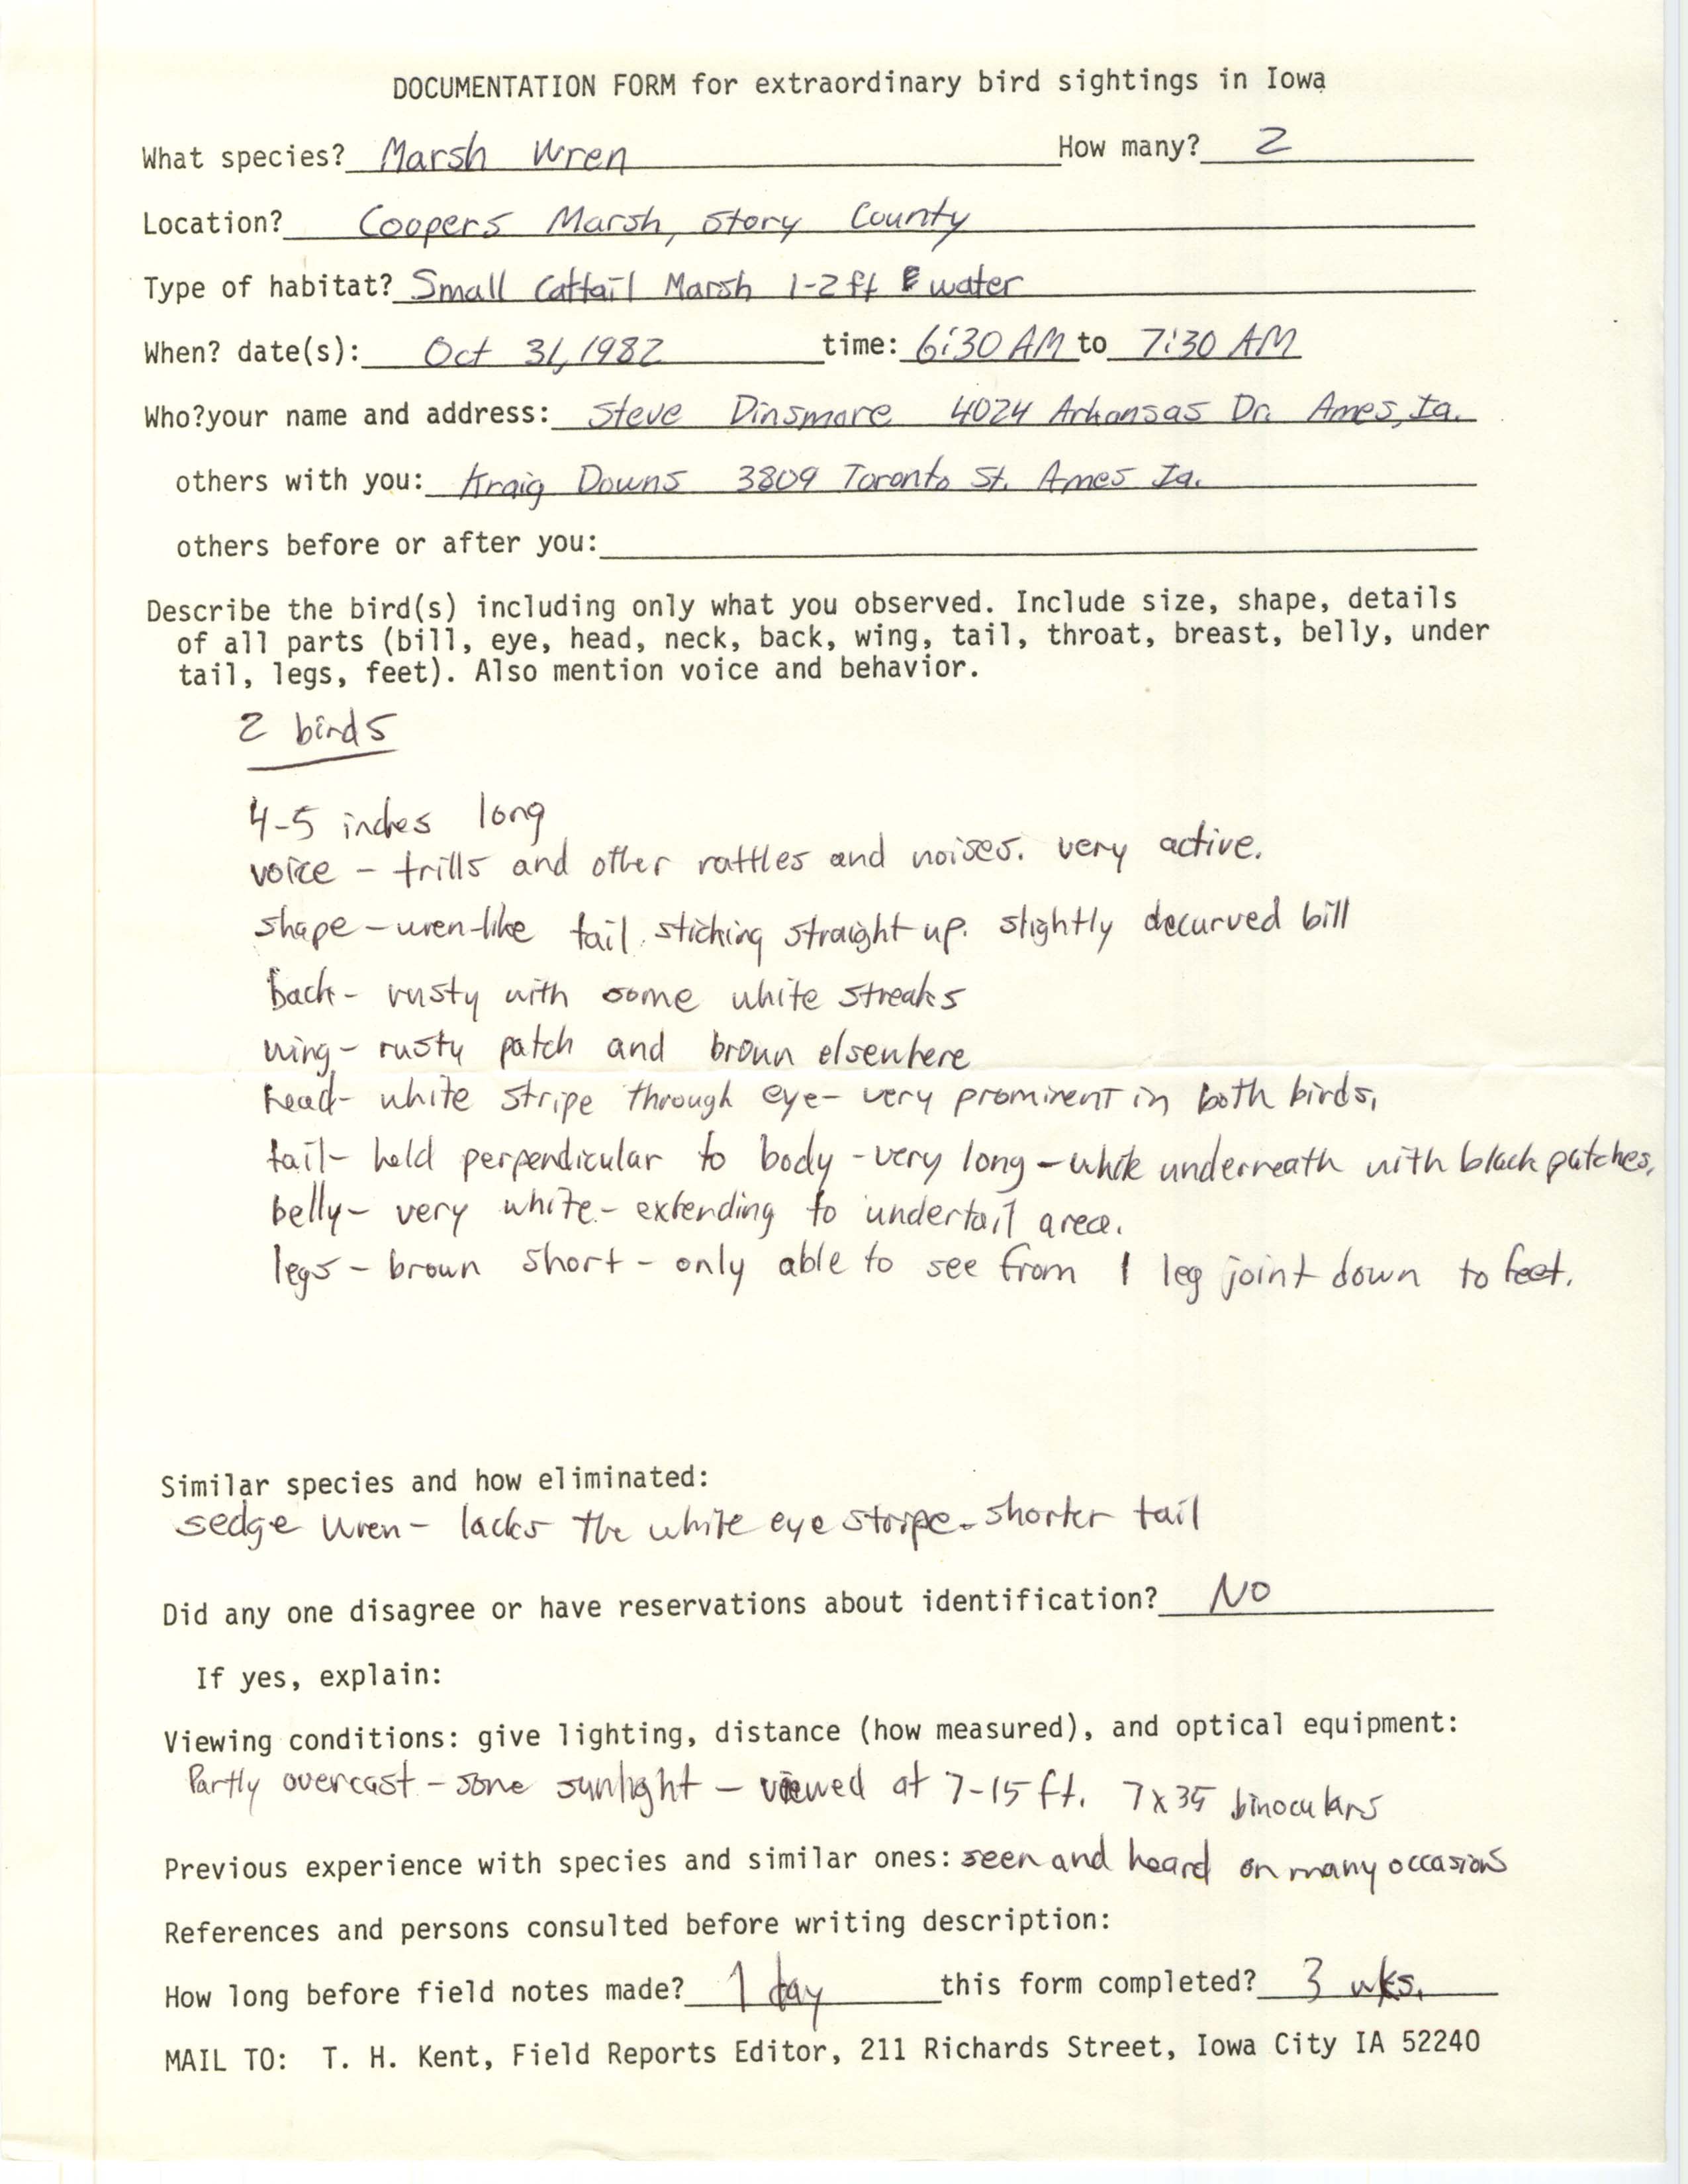 Rare bird documentation form for Marsh Wren at Cooper Prairie Marsh, 1982